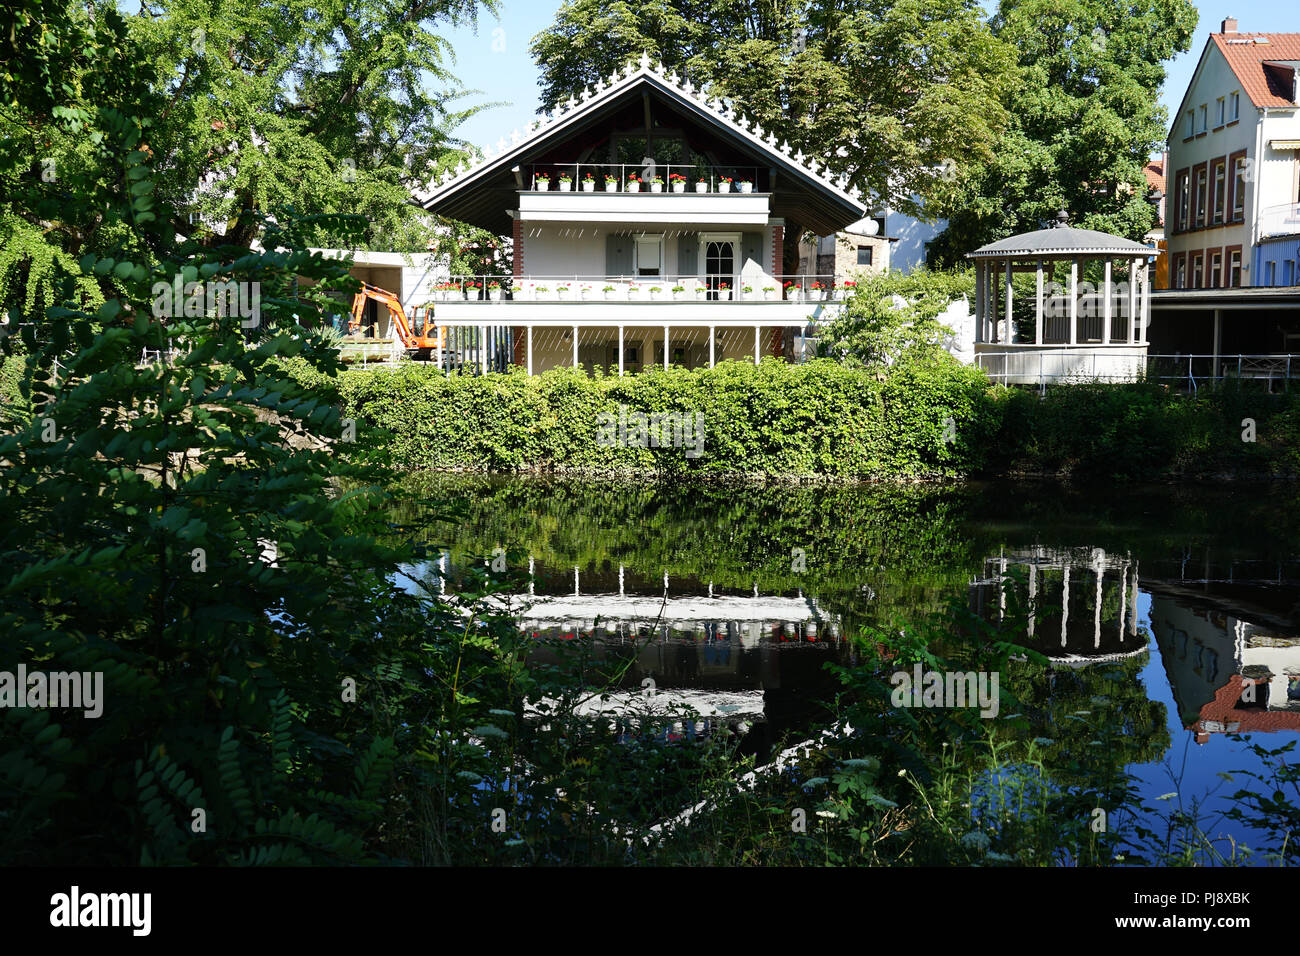 Das Petrihaus, Fachwerkhaus, am Ufer der Nidda, Roedelheim, Frankfurt am Main, Deutschland, Europa Stock Photo